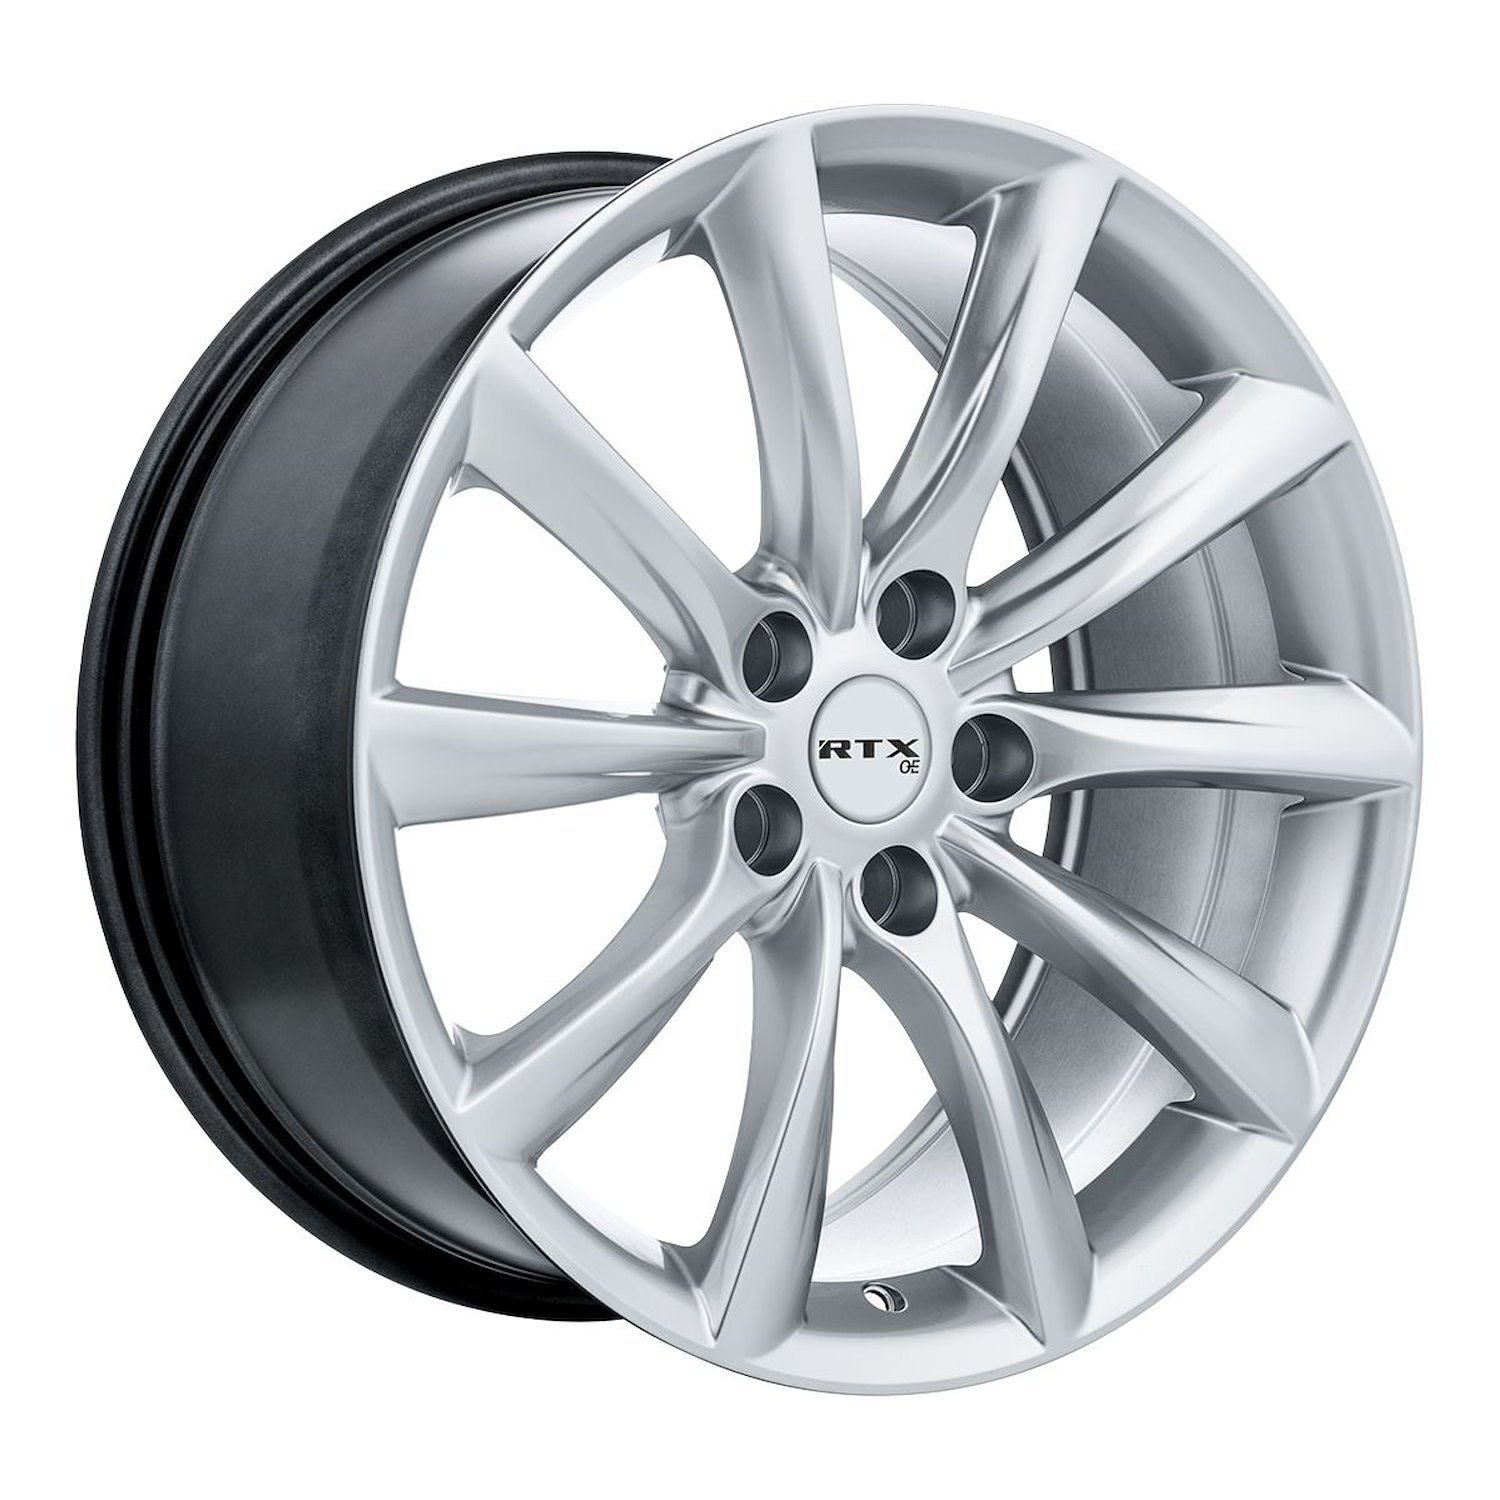 082699 OE-Series Alto Wheel [Size: 18" x 8.50"] Hyper Silver Finish